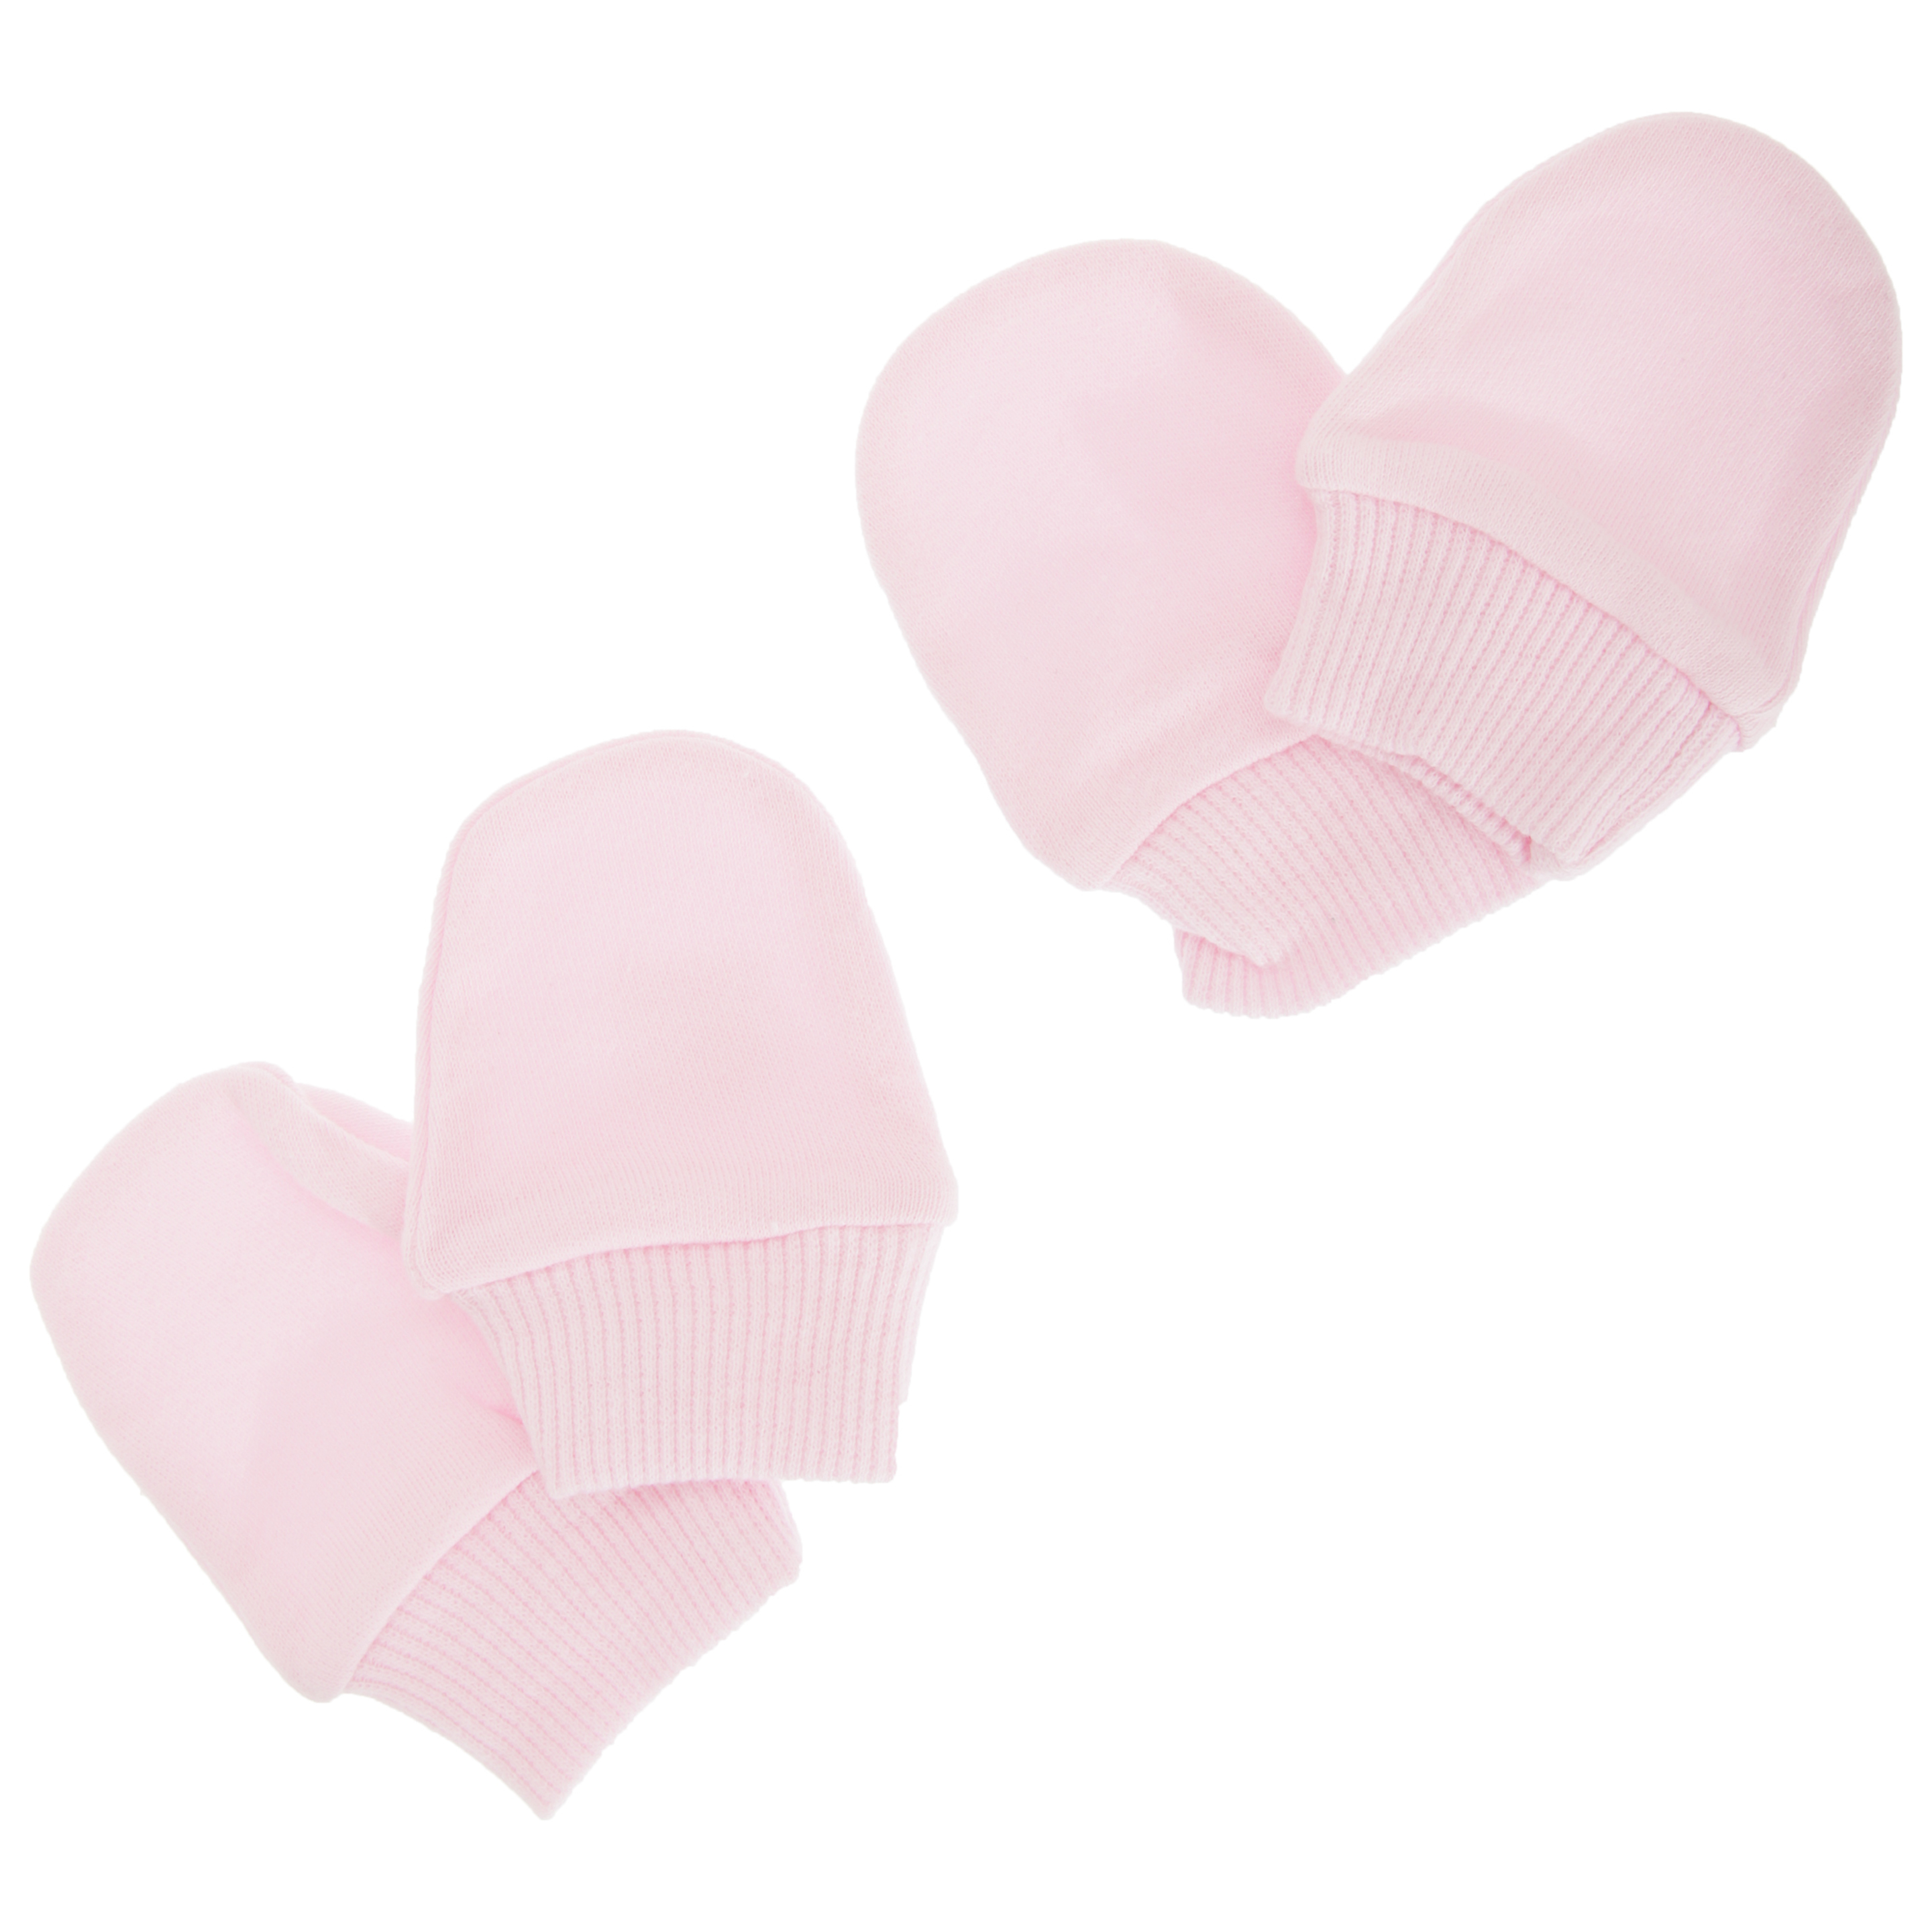 Manoplas Elásticas 100% Algodón Para Recién Nacido (Pack De 2 Pares) Universal Textiles (Rosa) - rosa - 